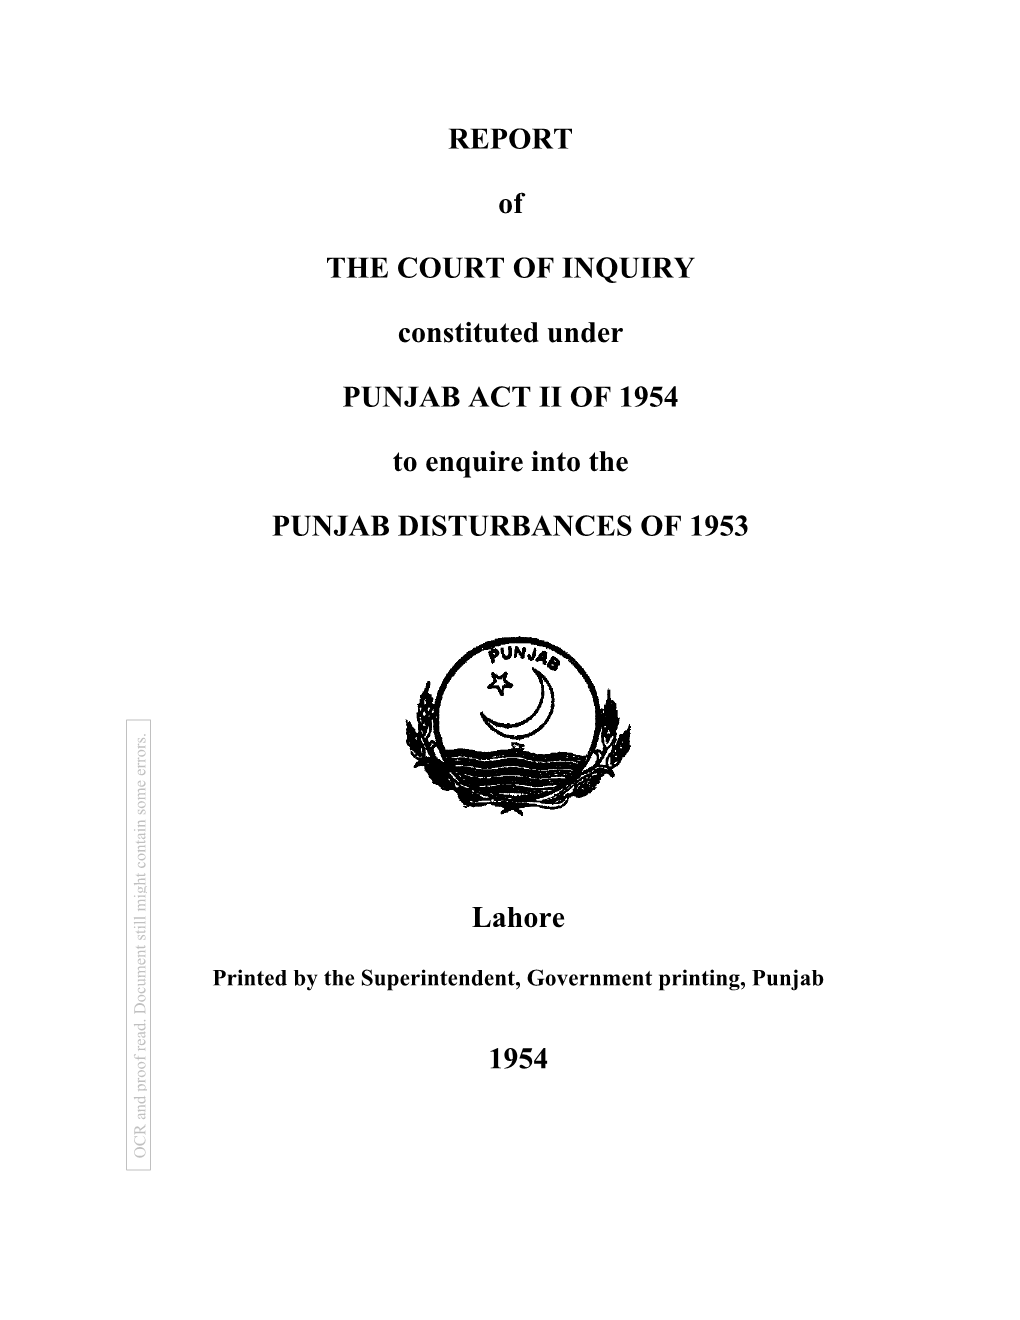 Report of the Court of Inquiry 1954 (Punjab Disturbances 1953)